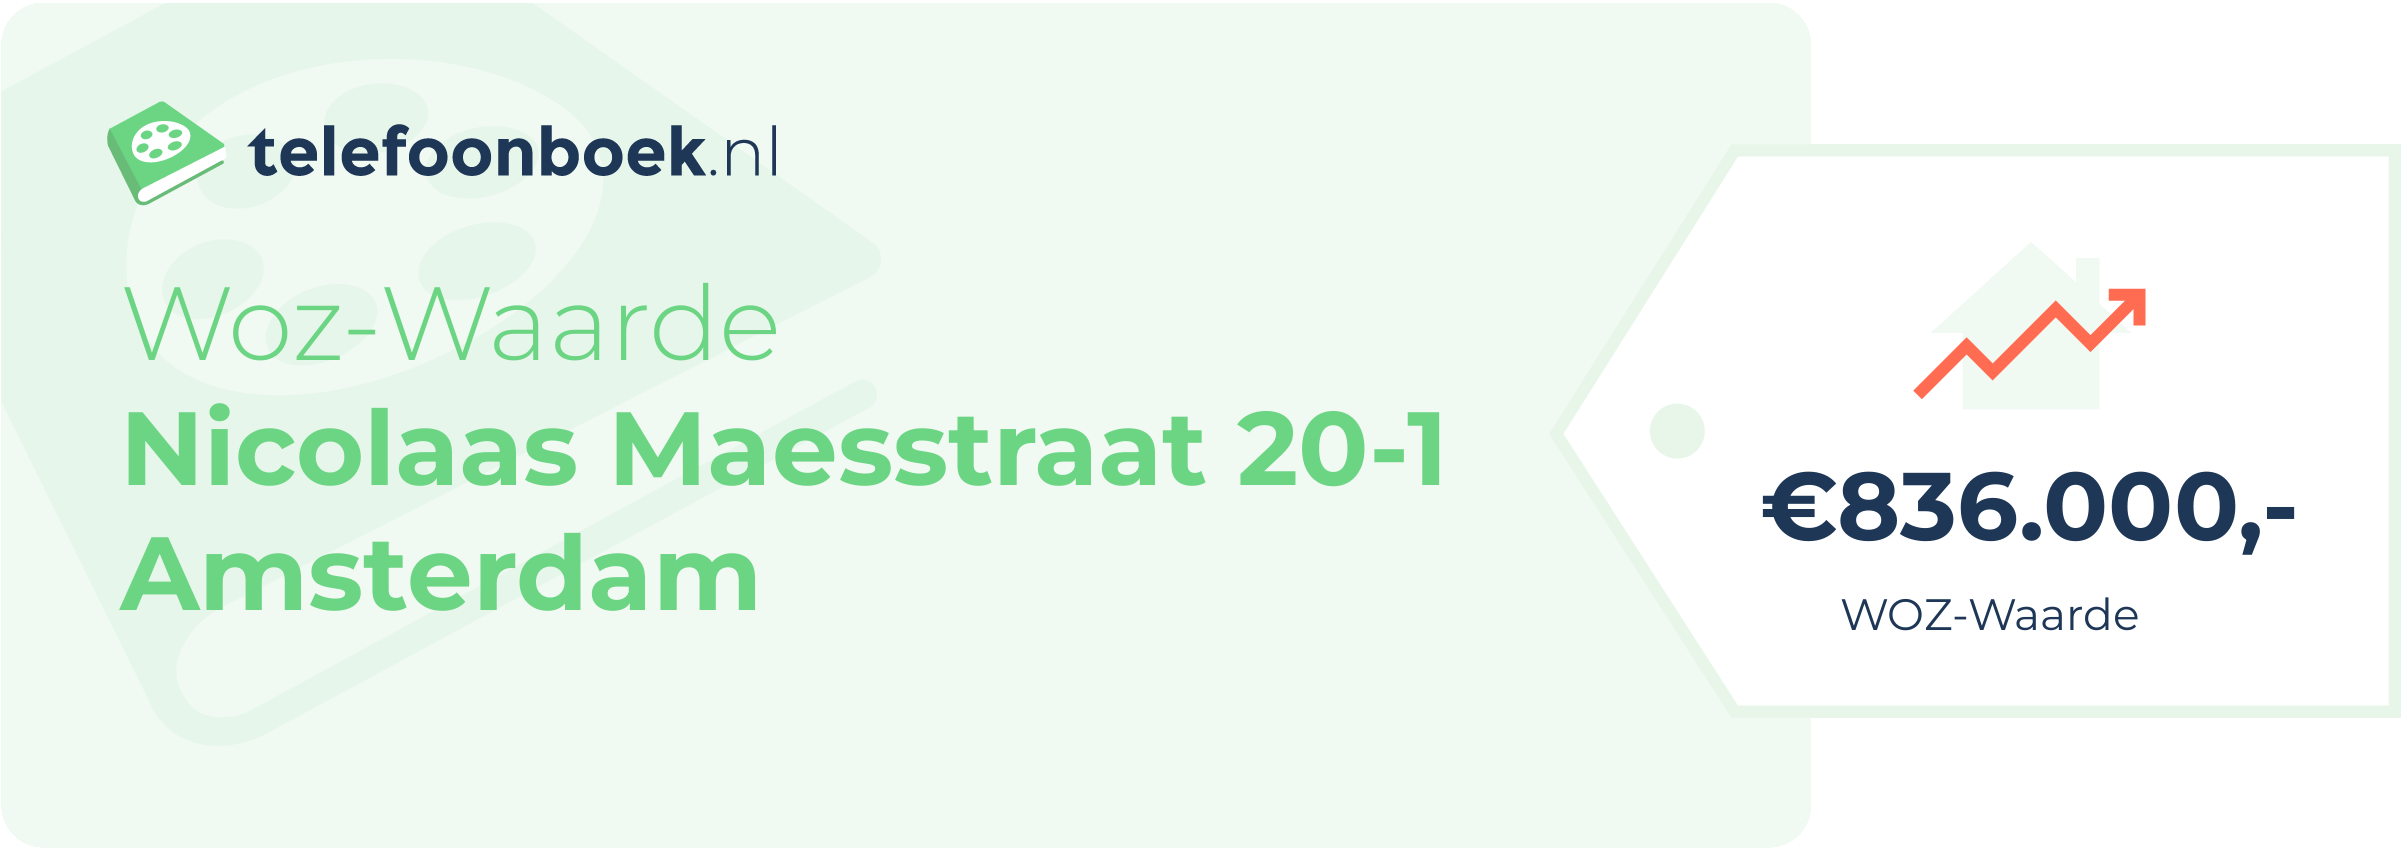 WOZ-waarde Nicolaas Maesstraat 20-1 Amsterdam